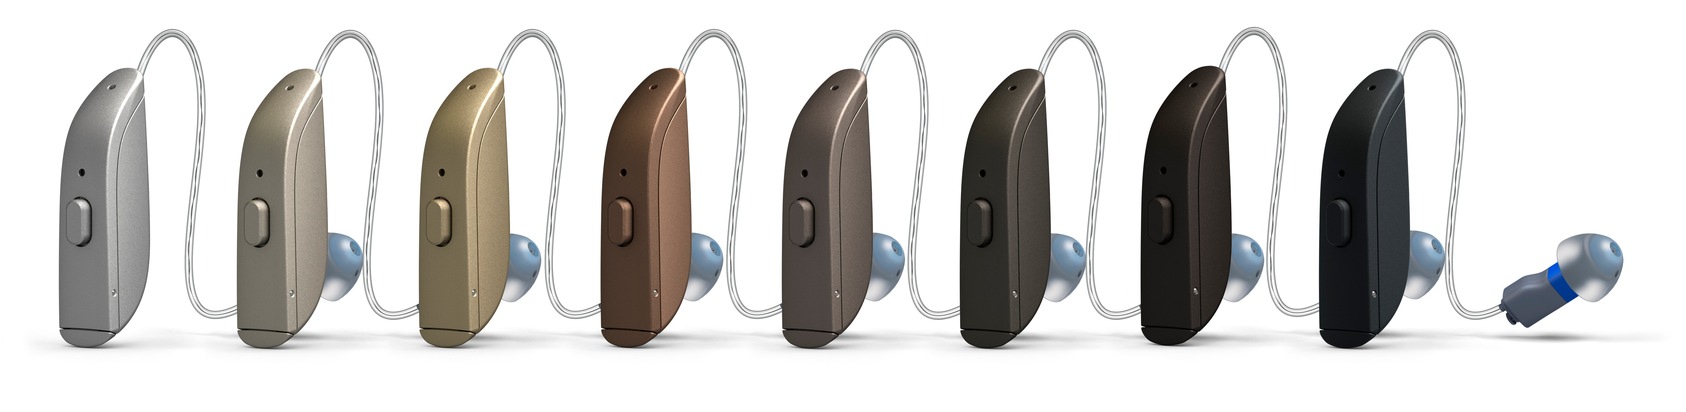 Neue Hörsystem-Klasse sichert einzigartiges Hör-Erleben: ReSound ONE ist Highlight der GN Hearing auf der weltgrößten digitalen Hörgeräte-Messe 2020